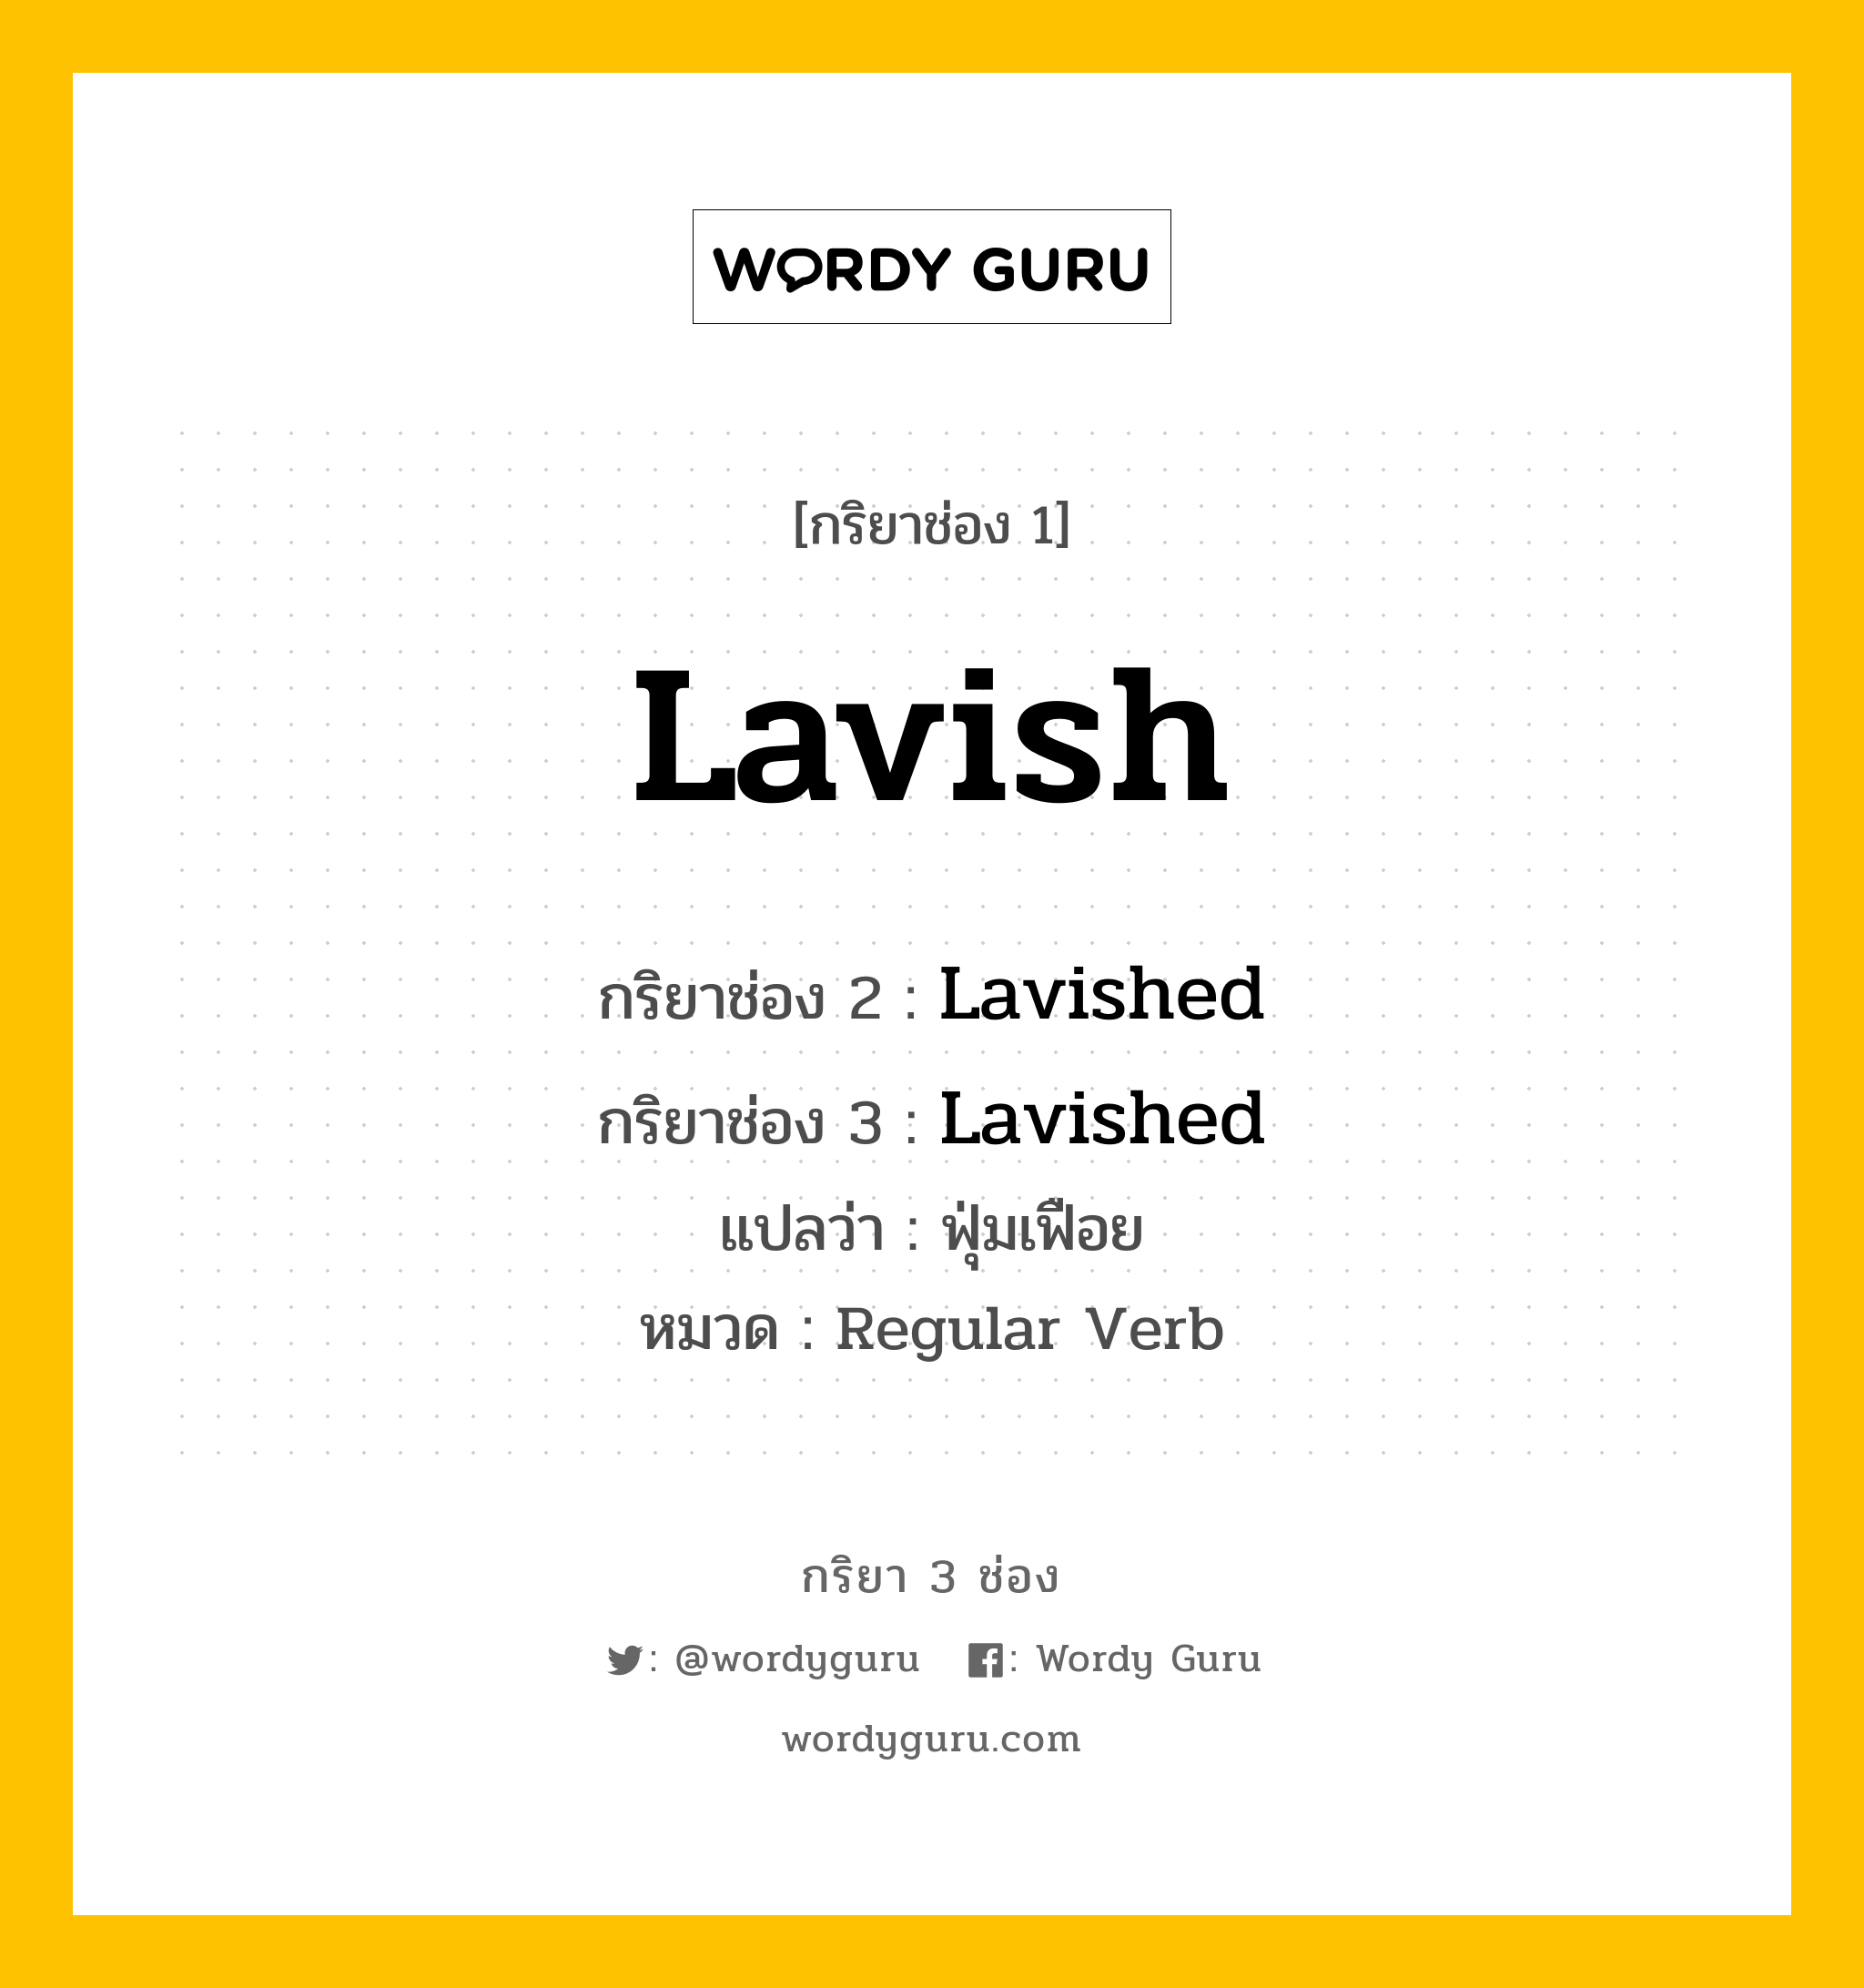 กริยา 3 ช่อง: Lavish ช่อง 2 Lavish ช่อง 3 คืออะไร, กริยาช่อง 1 Lavish กริยาช่อง 2 Lavished กริยาช่อง 3 Lavished แปลว่า ฟุ่มเฟือย หมวด Regular Verb หมวด Regular Verb